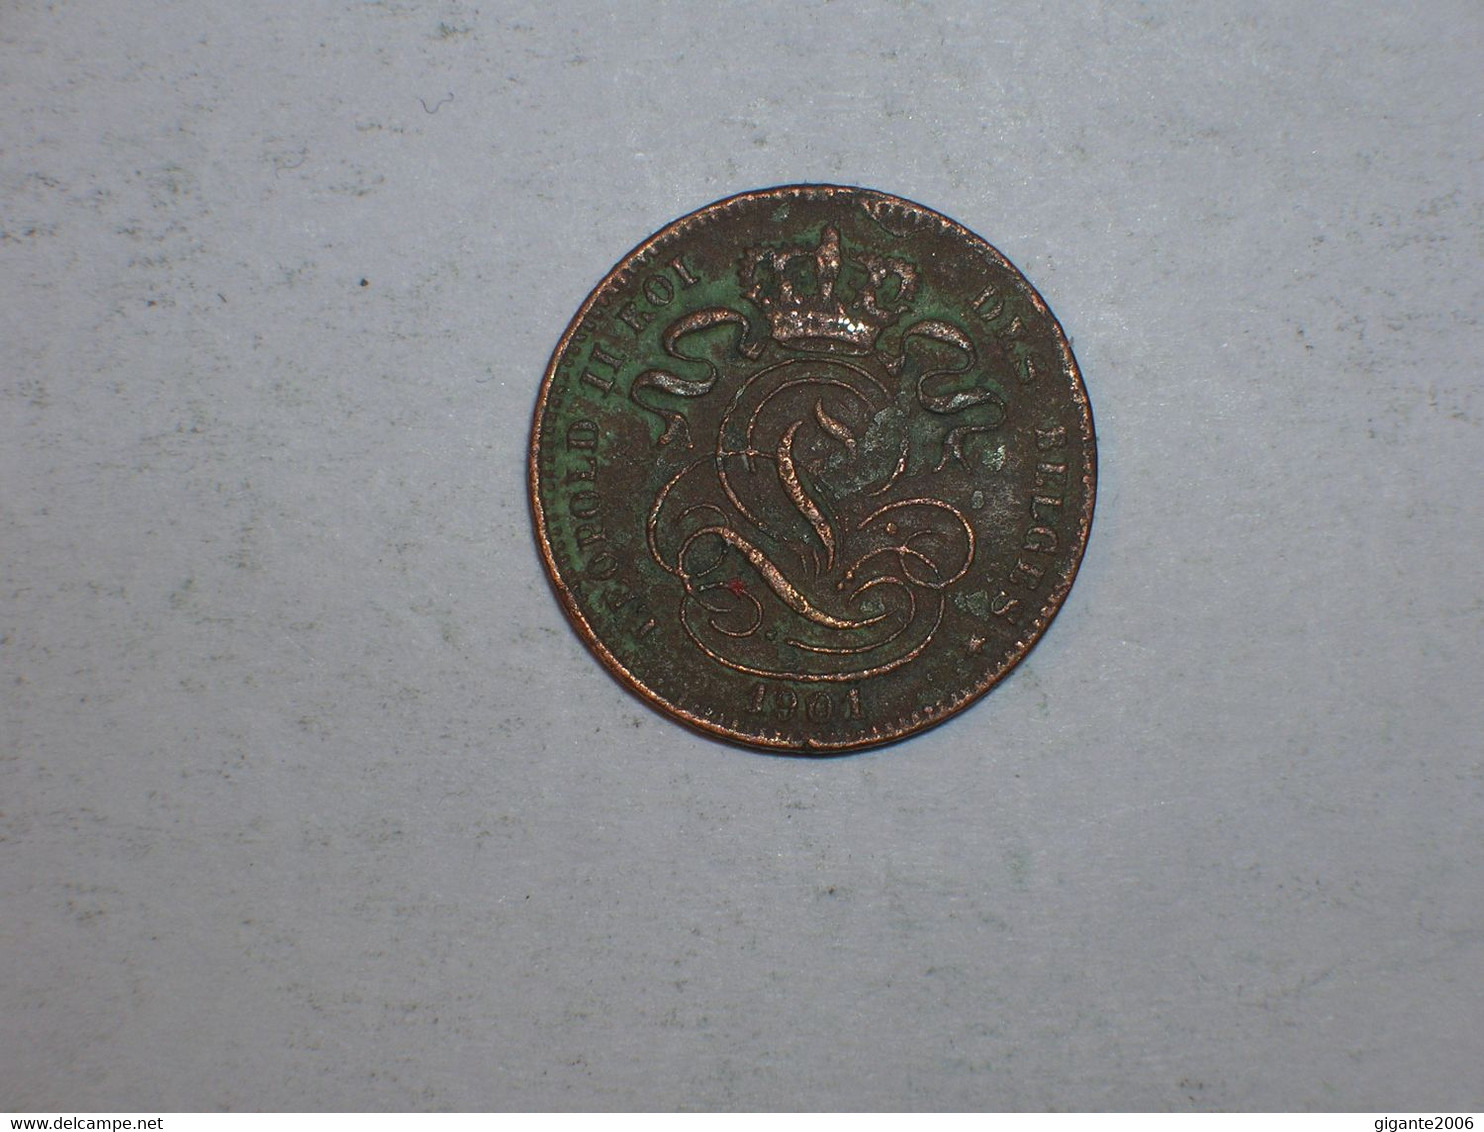 BELGICA 1 CENTIMO 1901 FR (9245) - 1 Cent